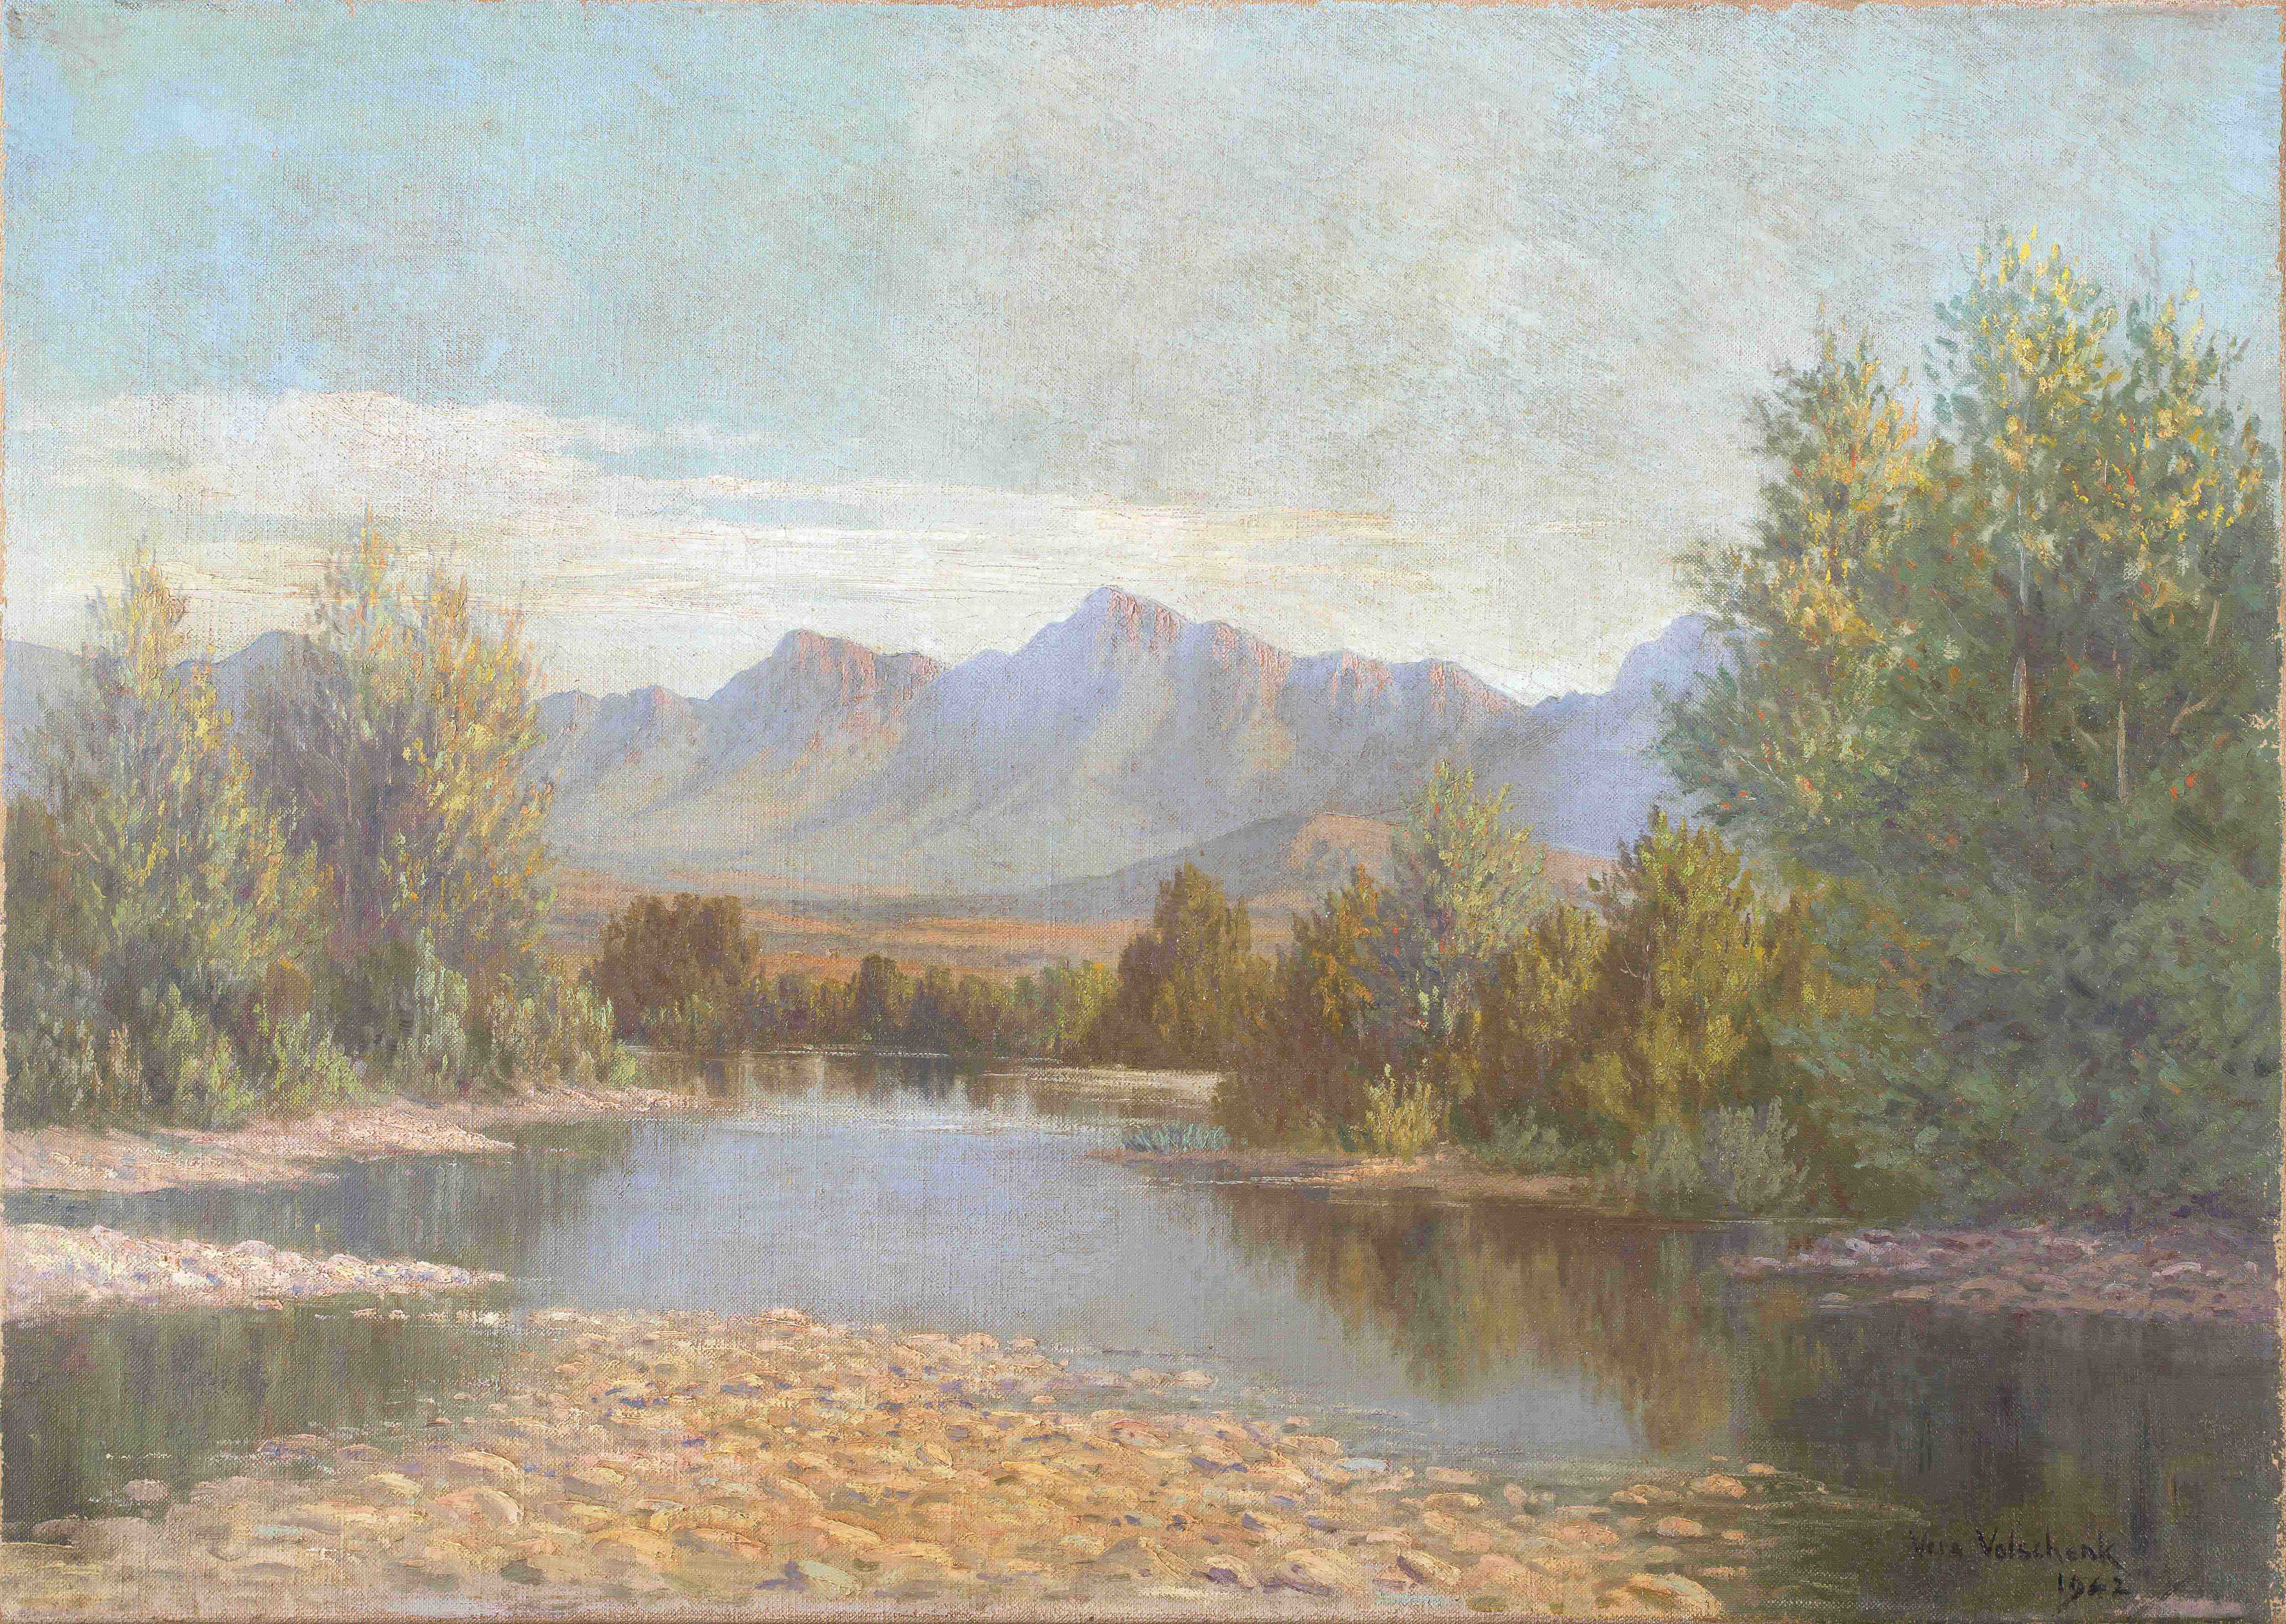 Vera Volschenk; The Berg River, Paarl